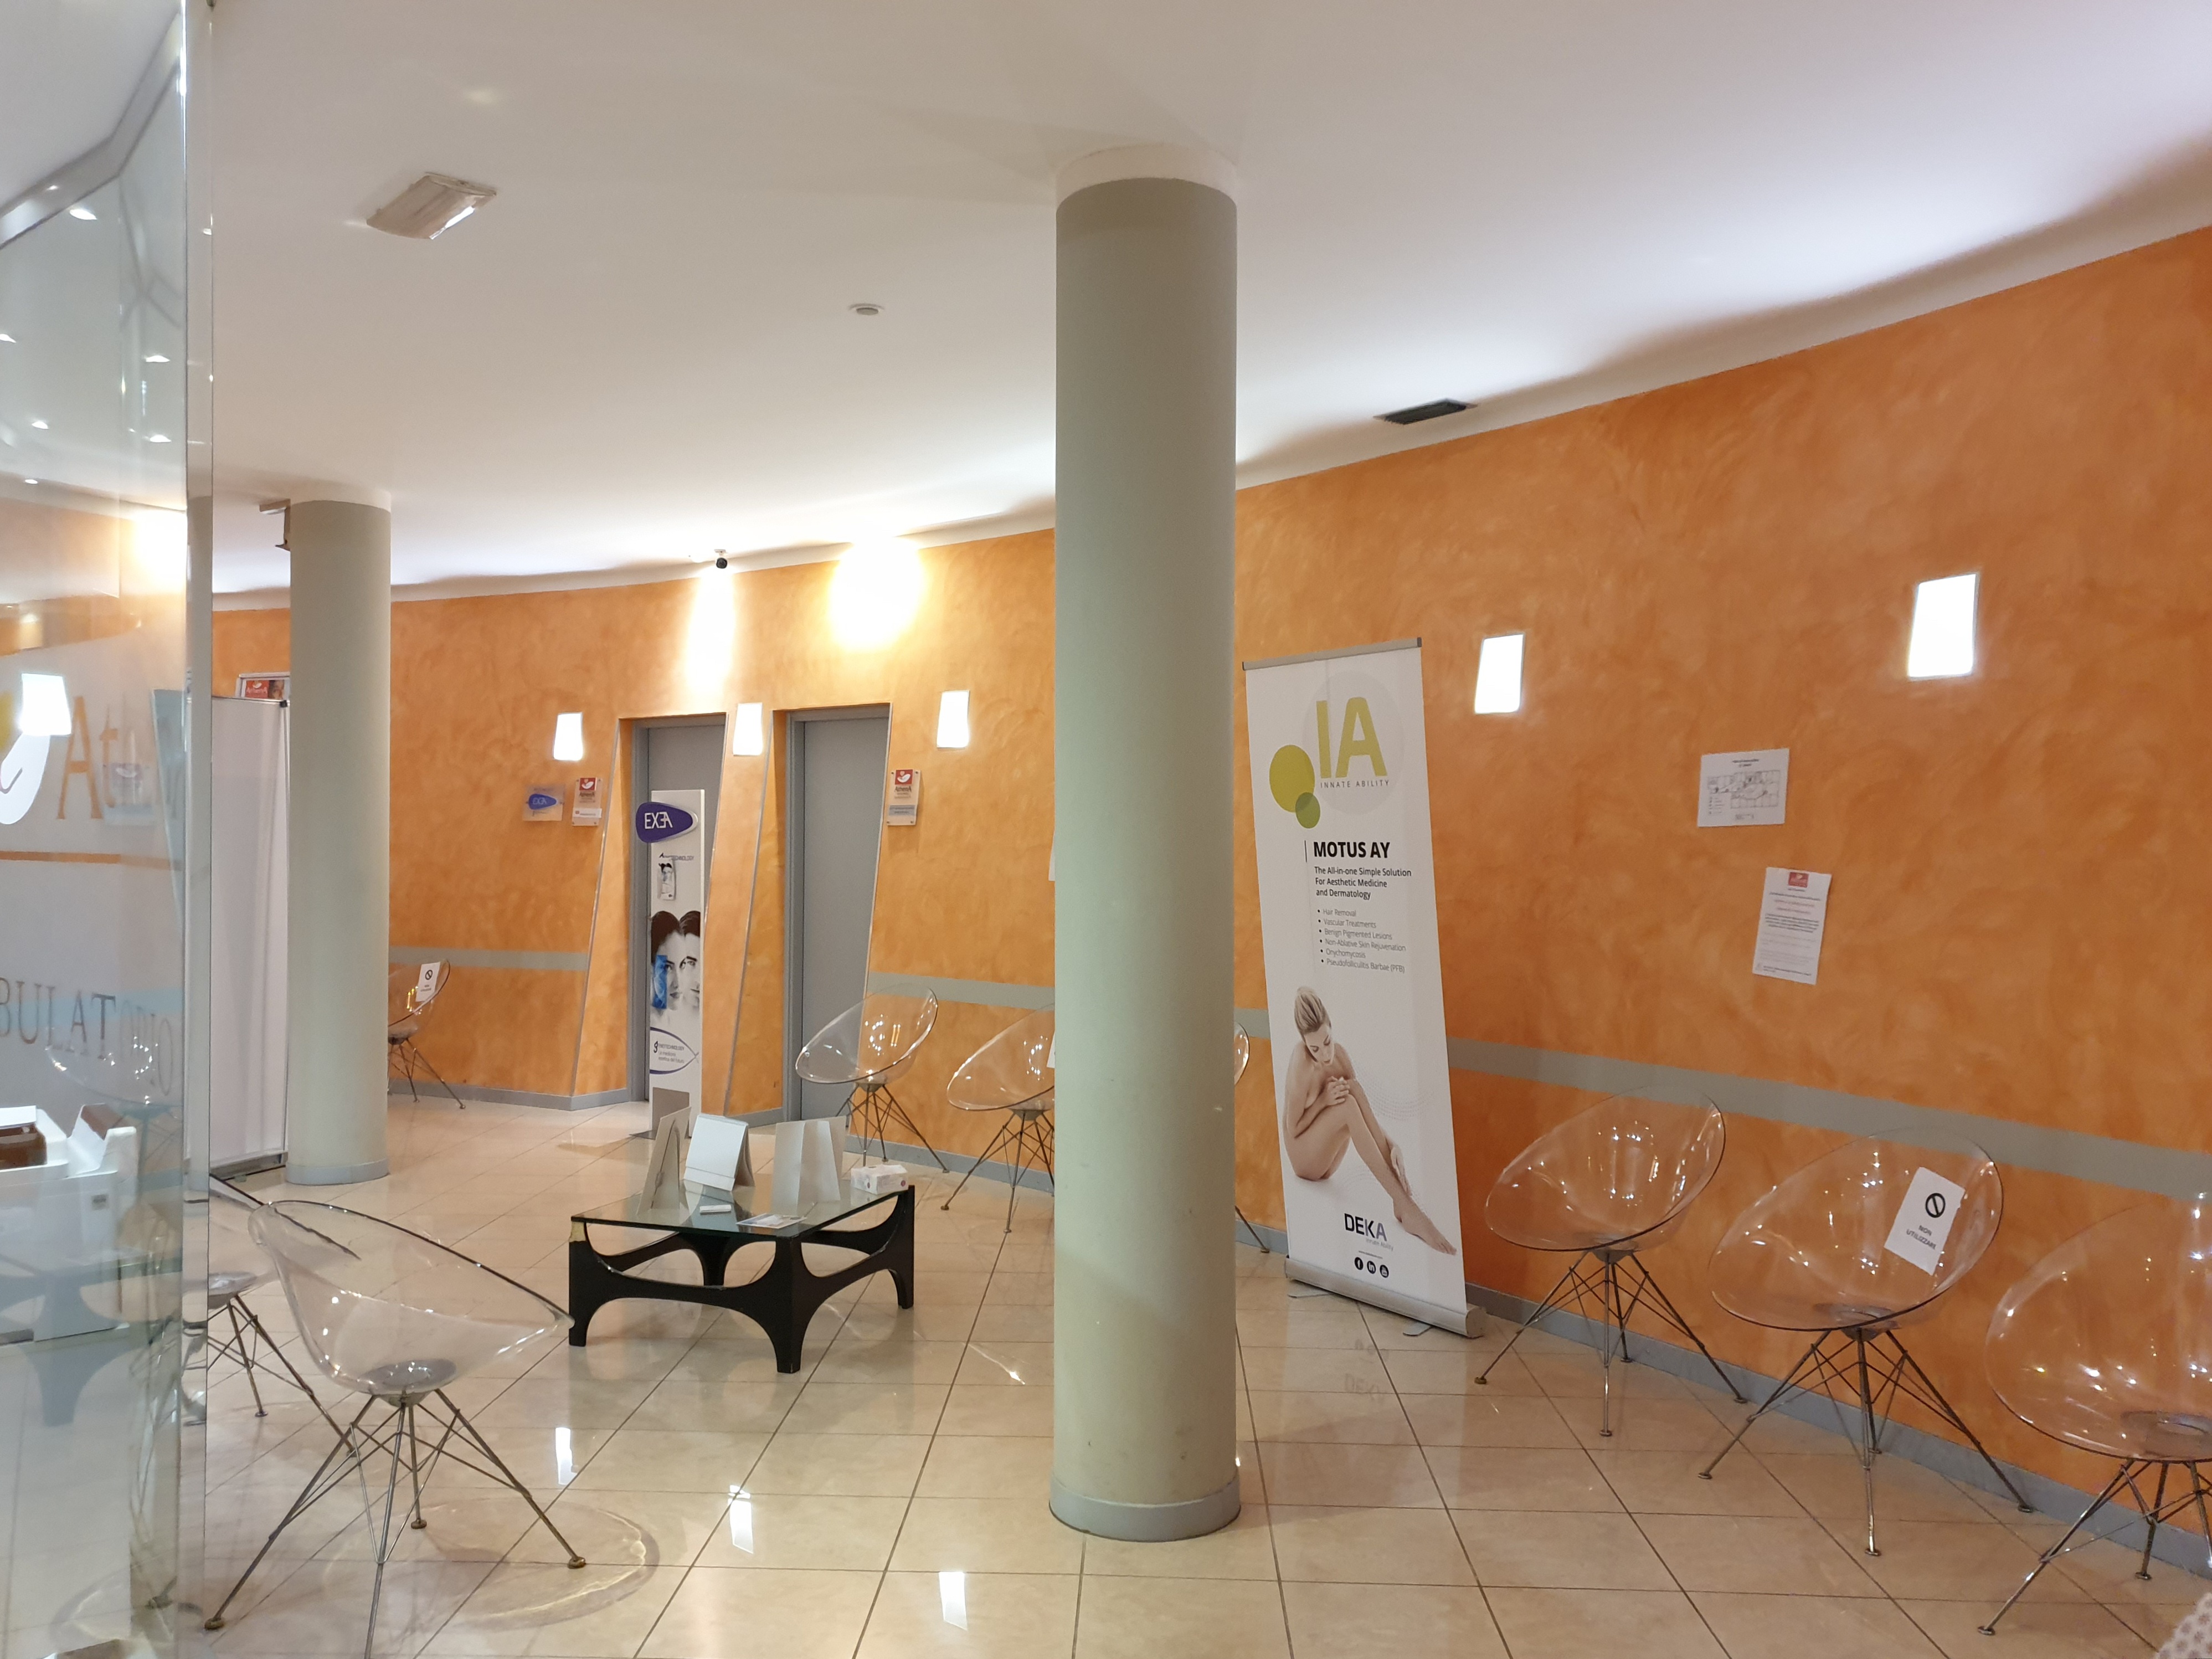 Poliambulatorio Rimini: Athena Centro Medico d’eccellenza